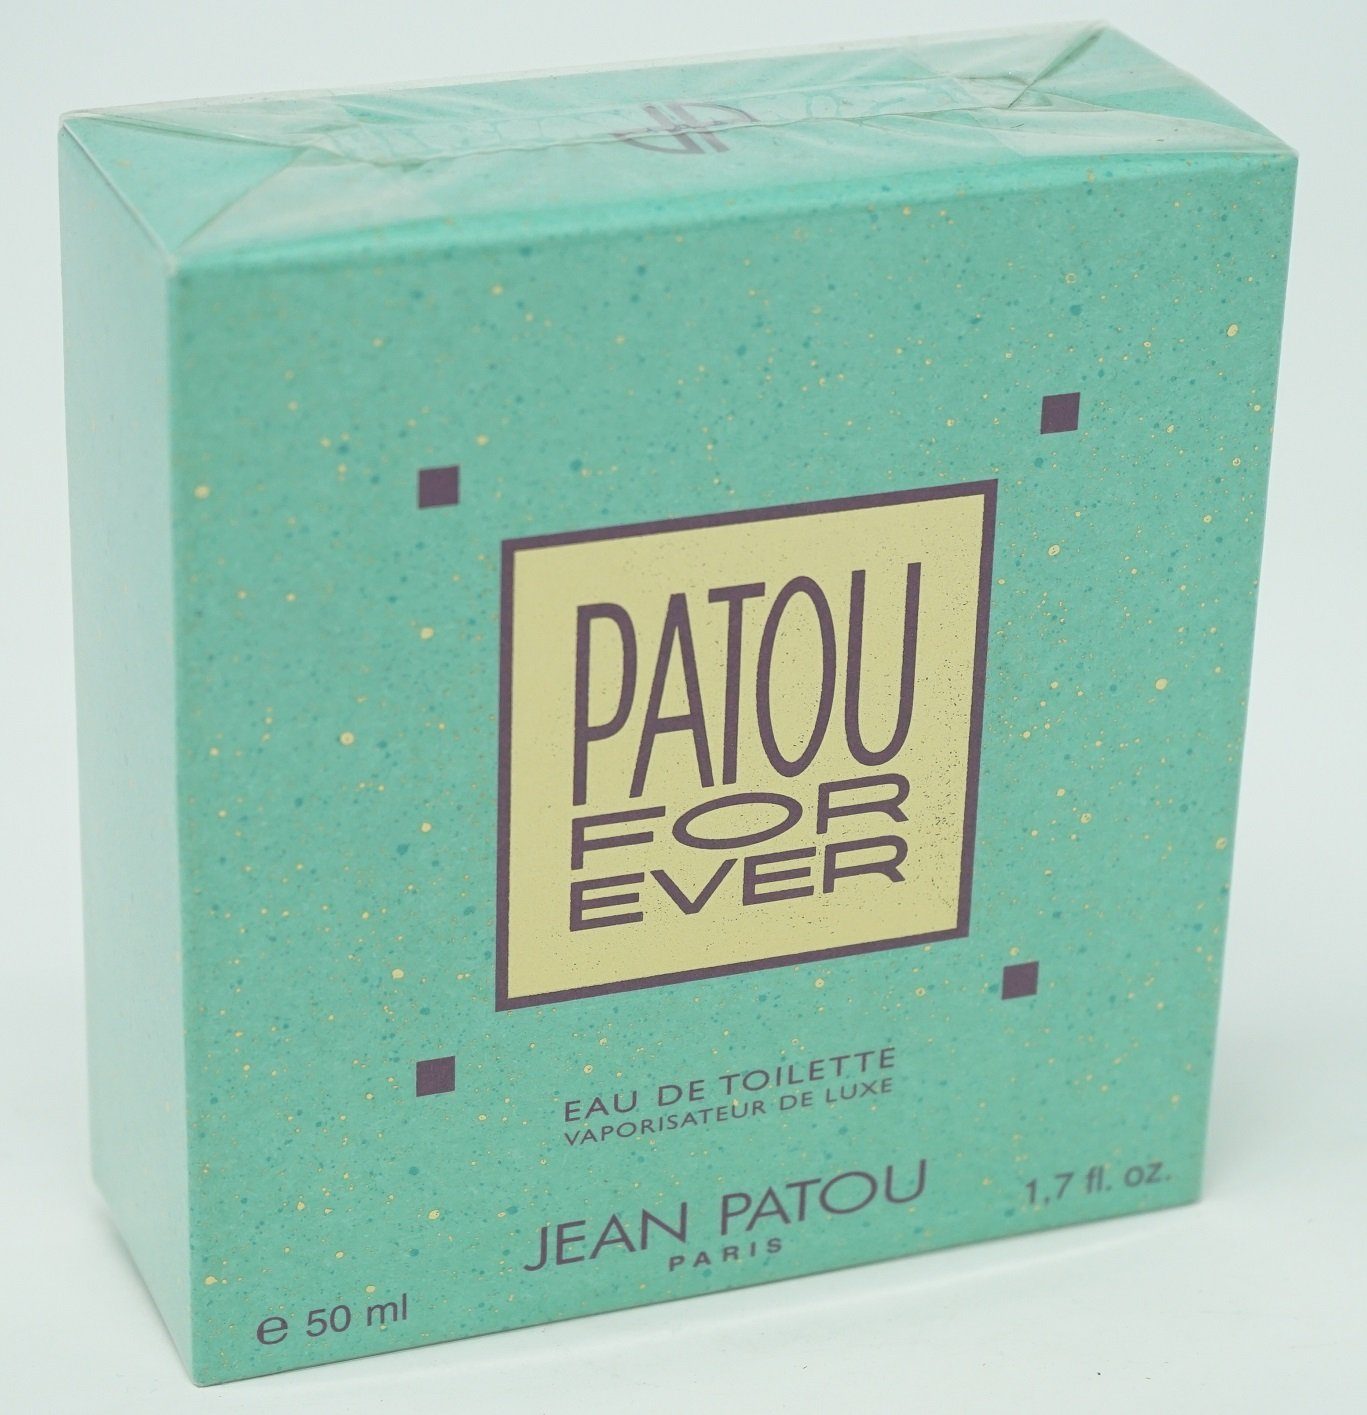 jean patou Eau de Toilette Jean Patou For Ever Eau de Toilette Vaporisateur de Luxe 50 ml